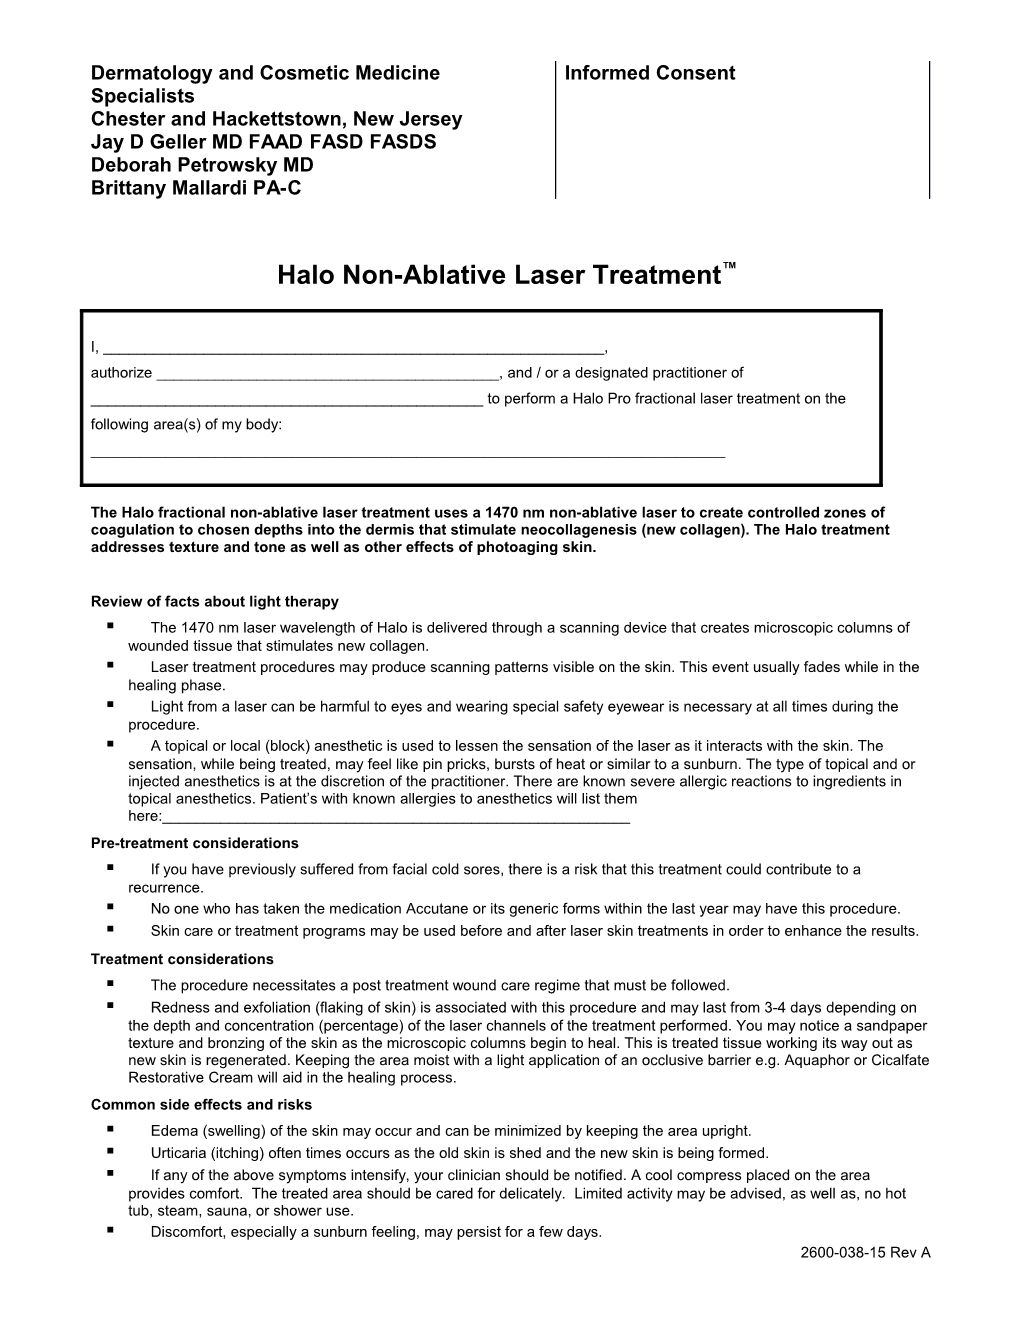 Halo Non-Ablative Laser Treatment